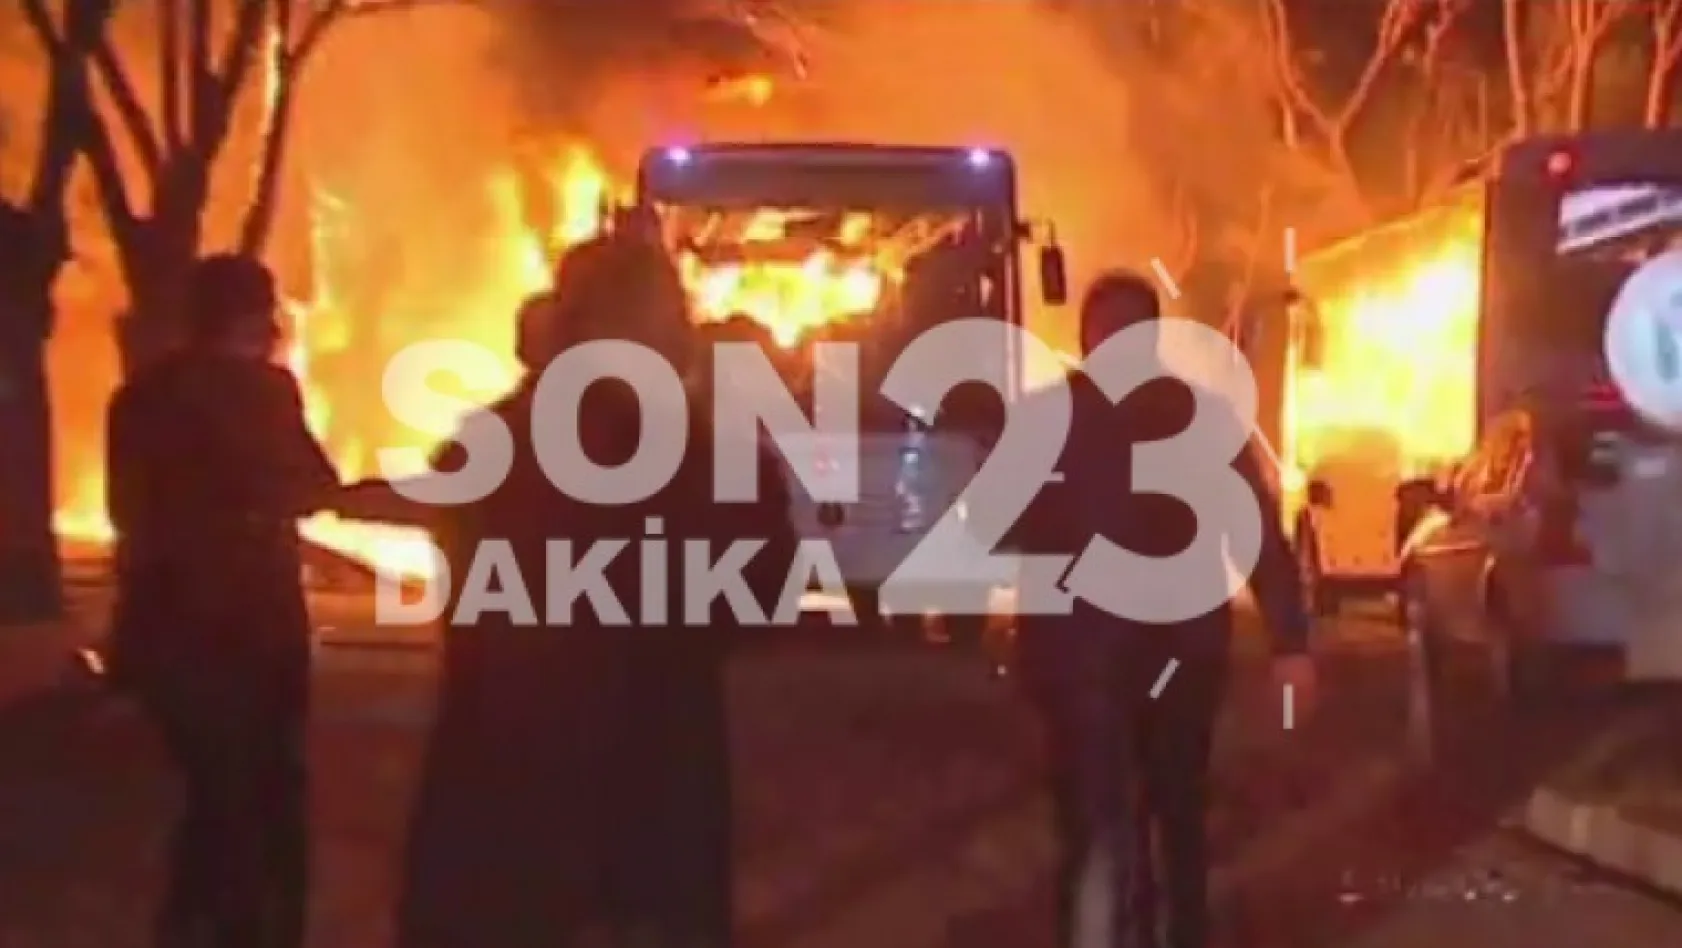 Ankara'da patlama